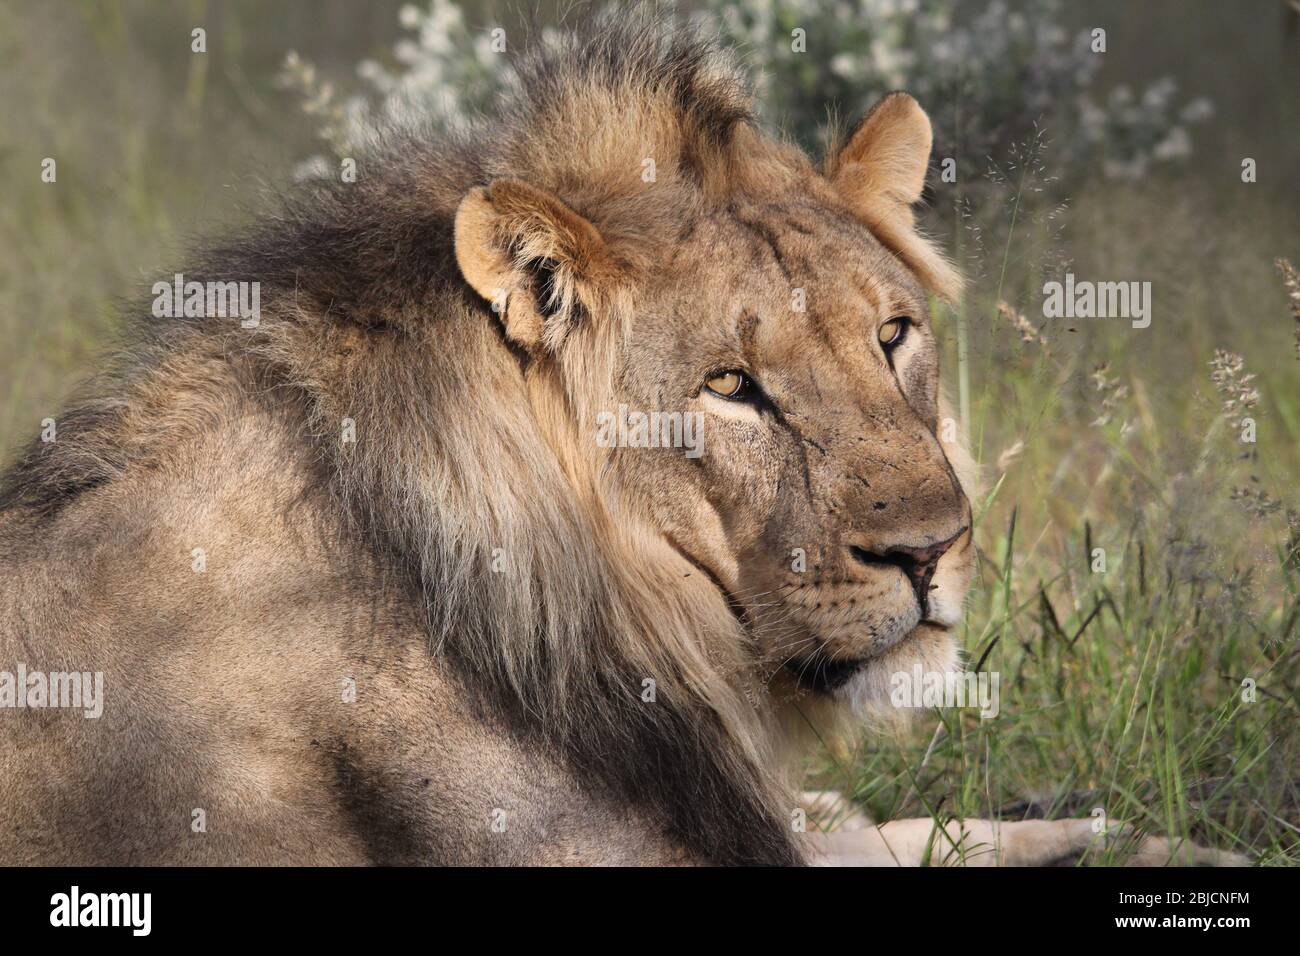 León masculino en el Parque Nacional de Etosha, acostado y mirando a mí, con sus ojos amarillos. Parece un gato adorable. Presa de león es impala, cebra wildebeest Foto de stock